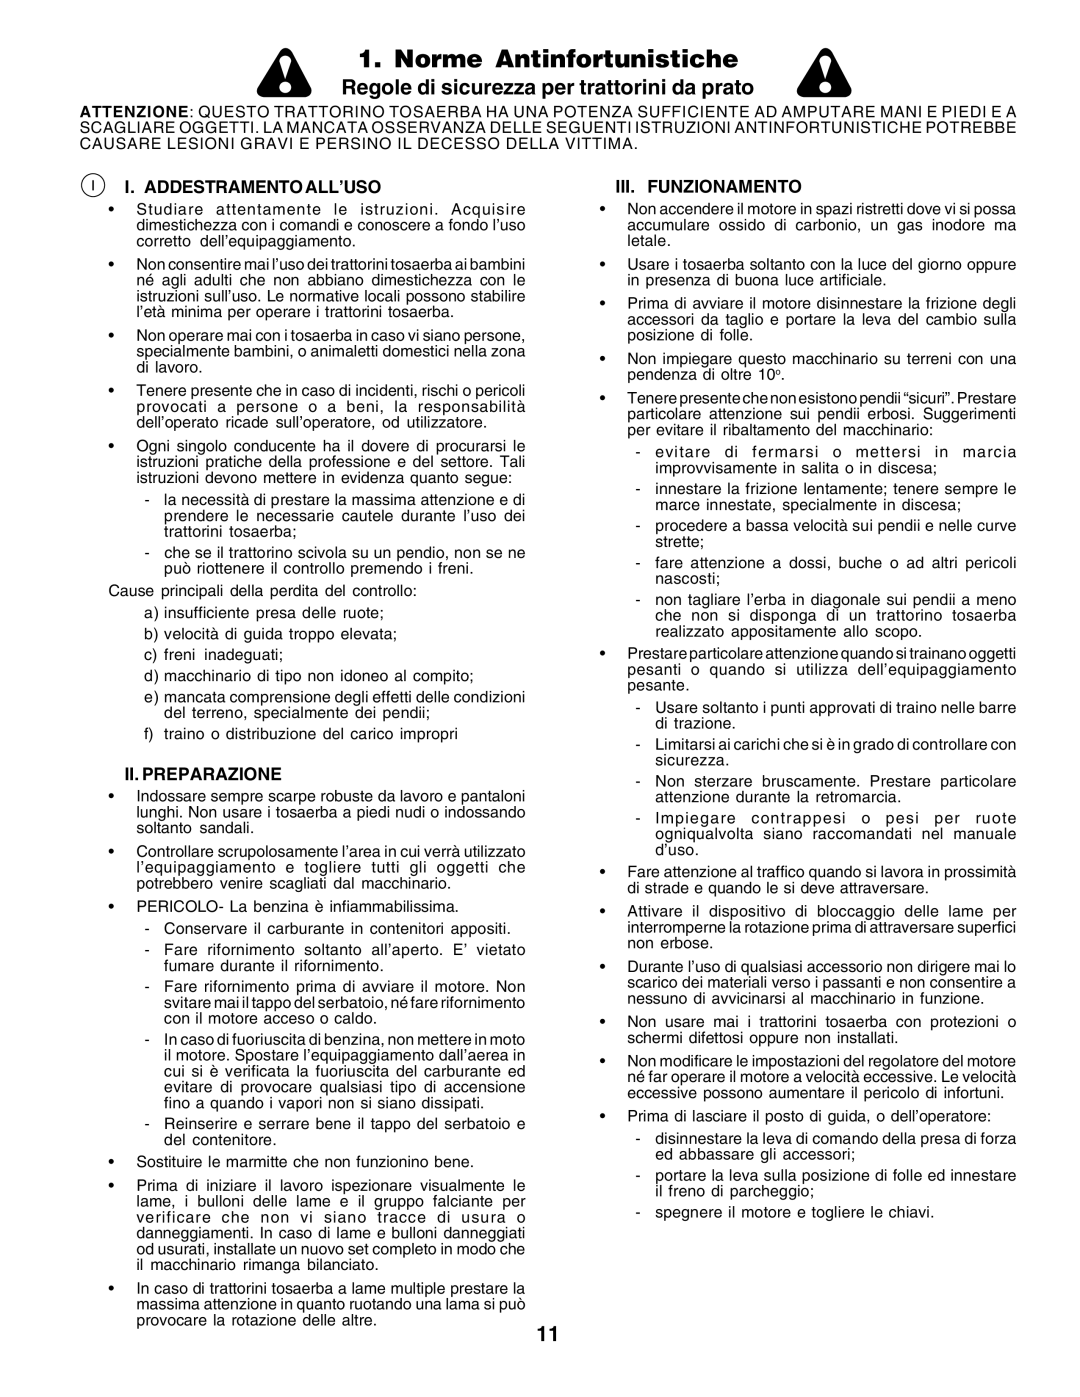 Husqvarna GTH250 Norme Antinfortunistiche, Regole di sicurezza per trattorini da prato, I. Addestramento All’Uso 